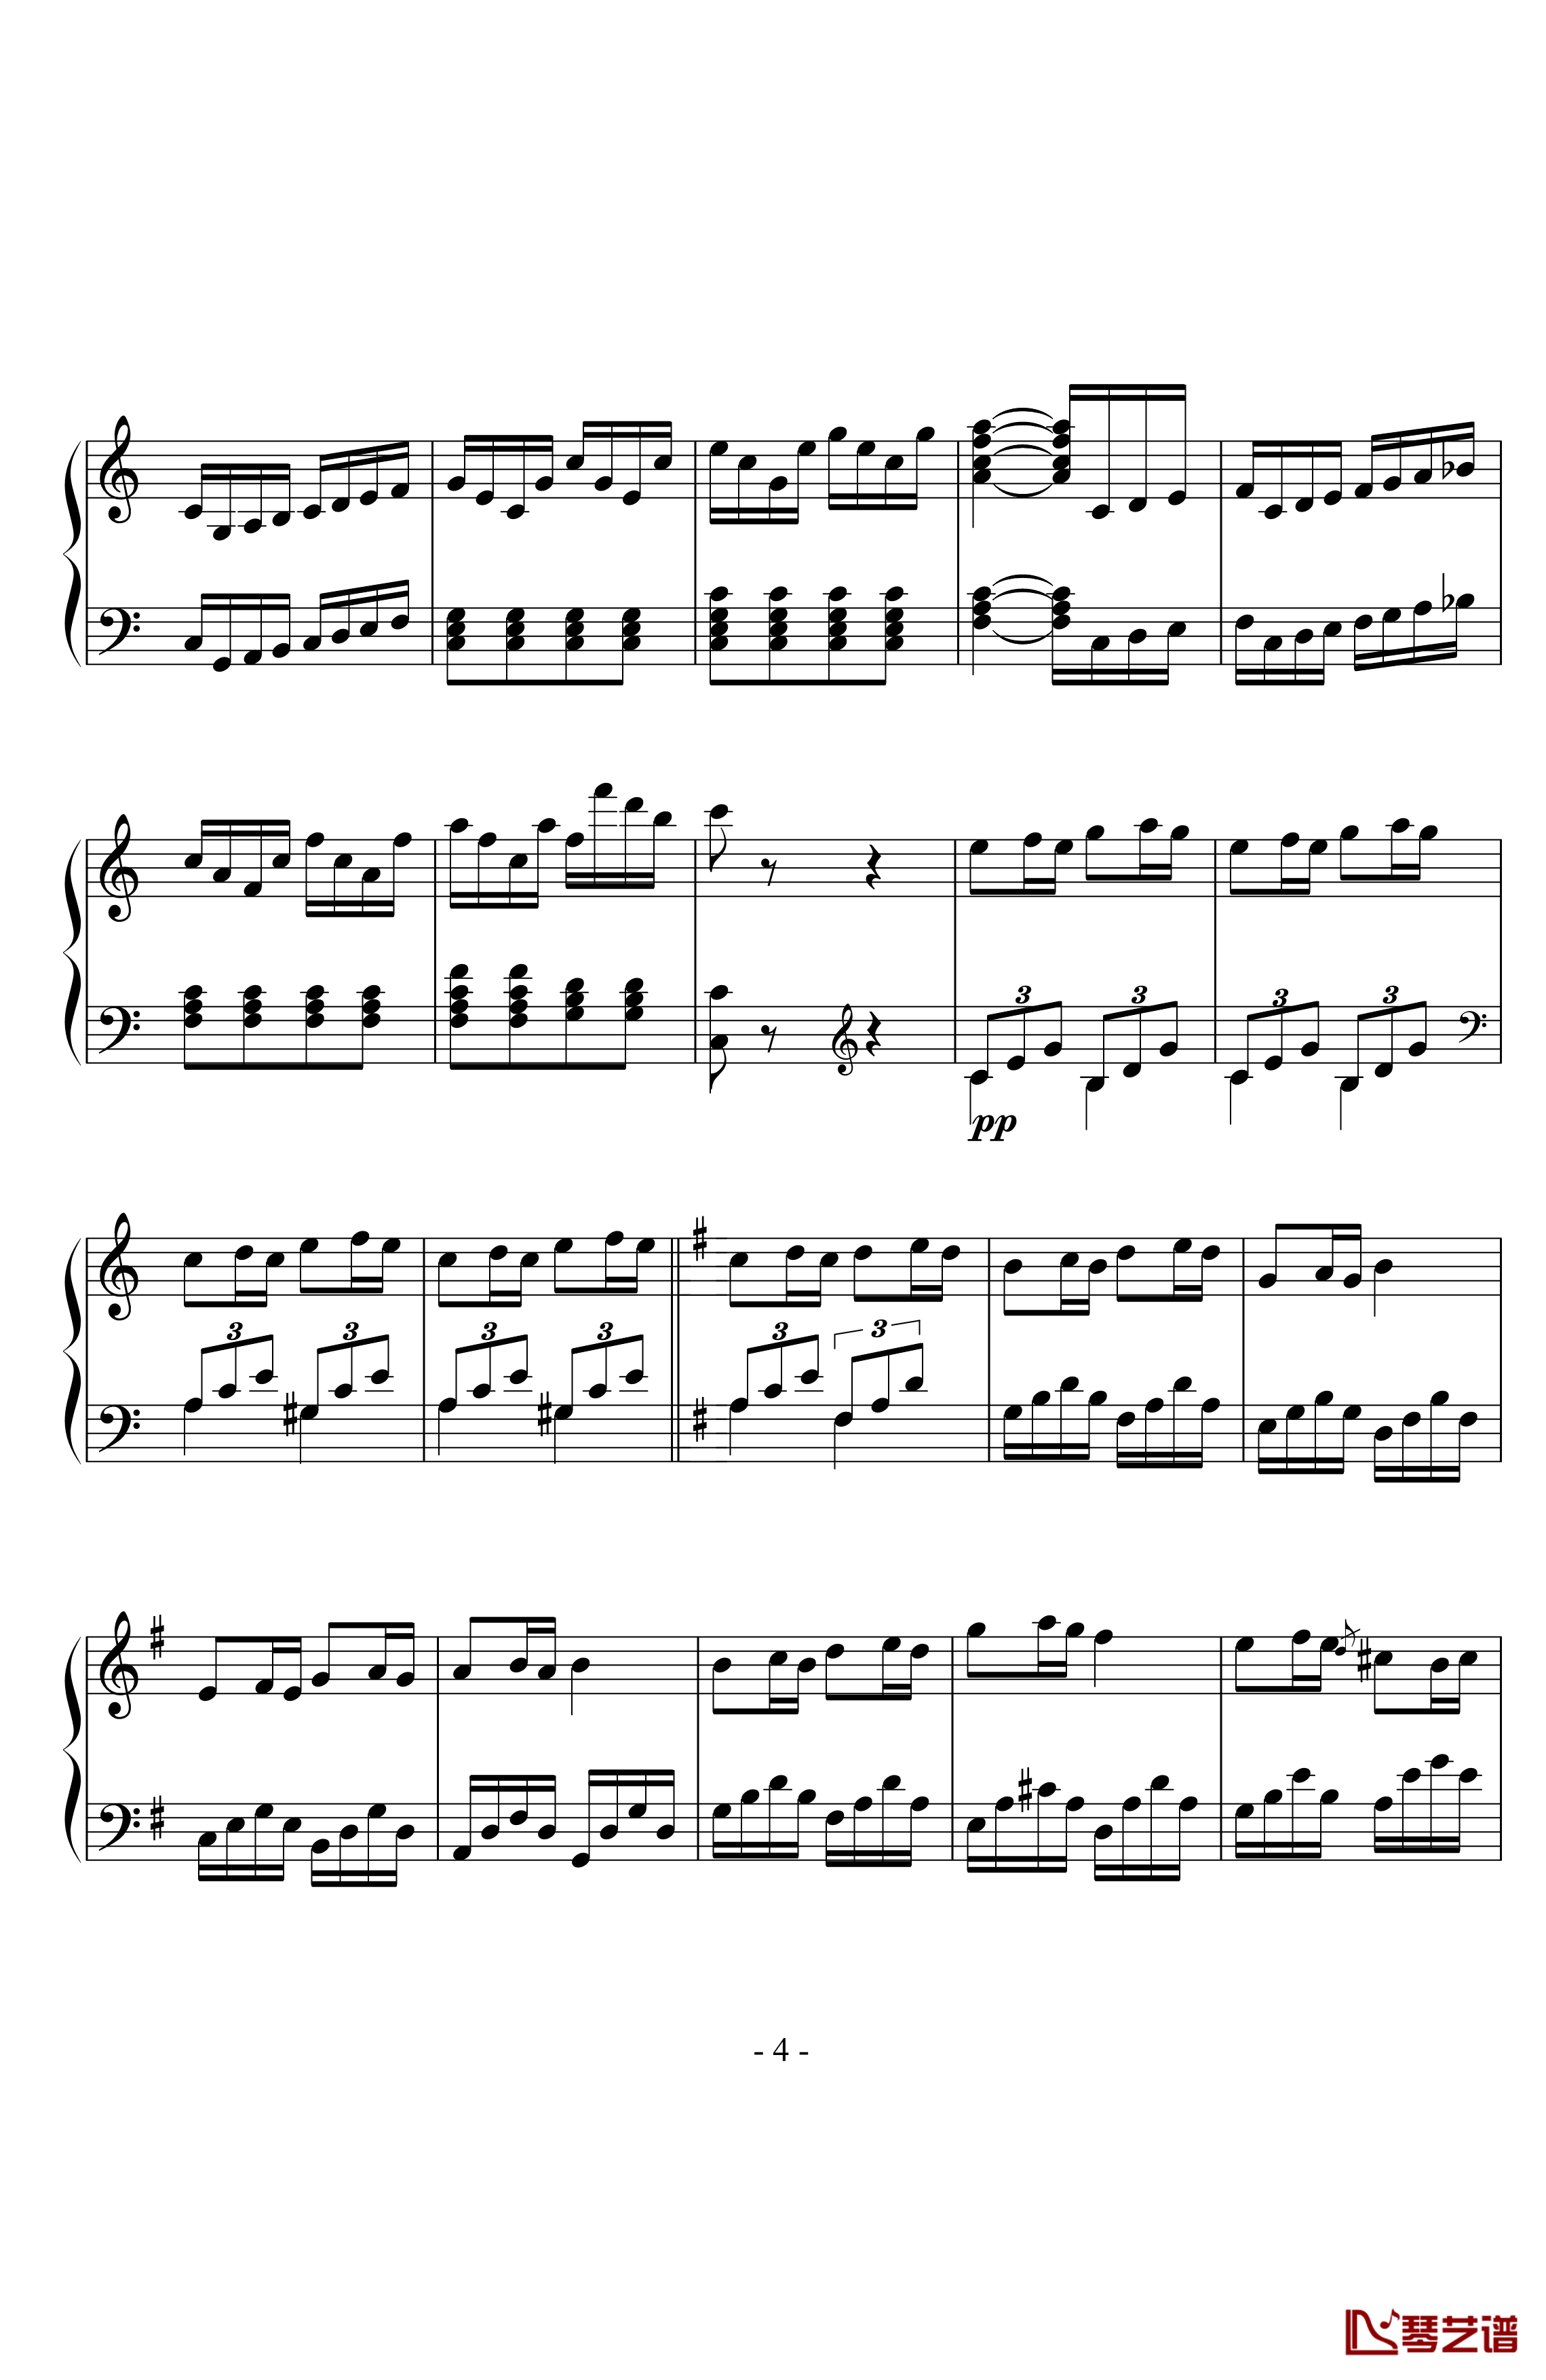 贝多芬第二十五钢琴奏鸣曲钢琴谱-贝多芬-beethoven4